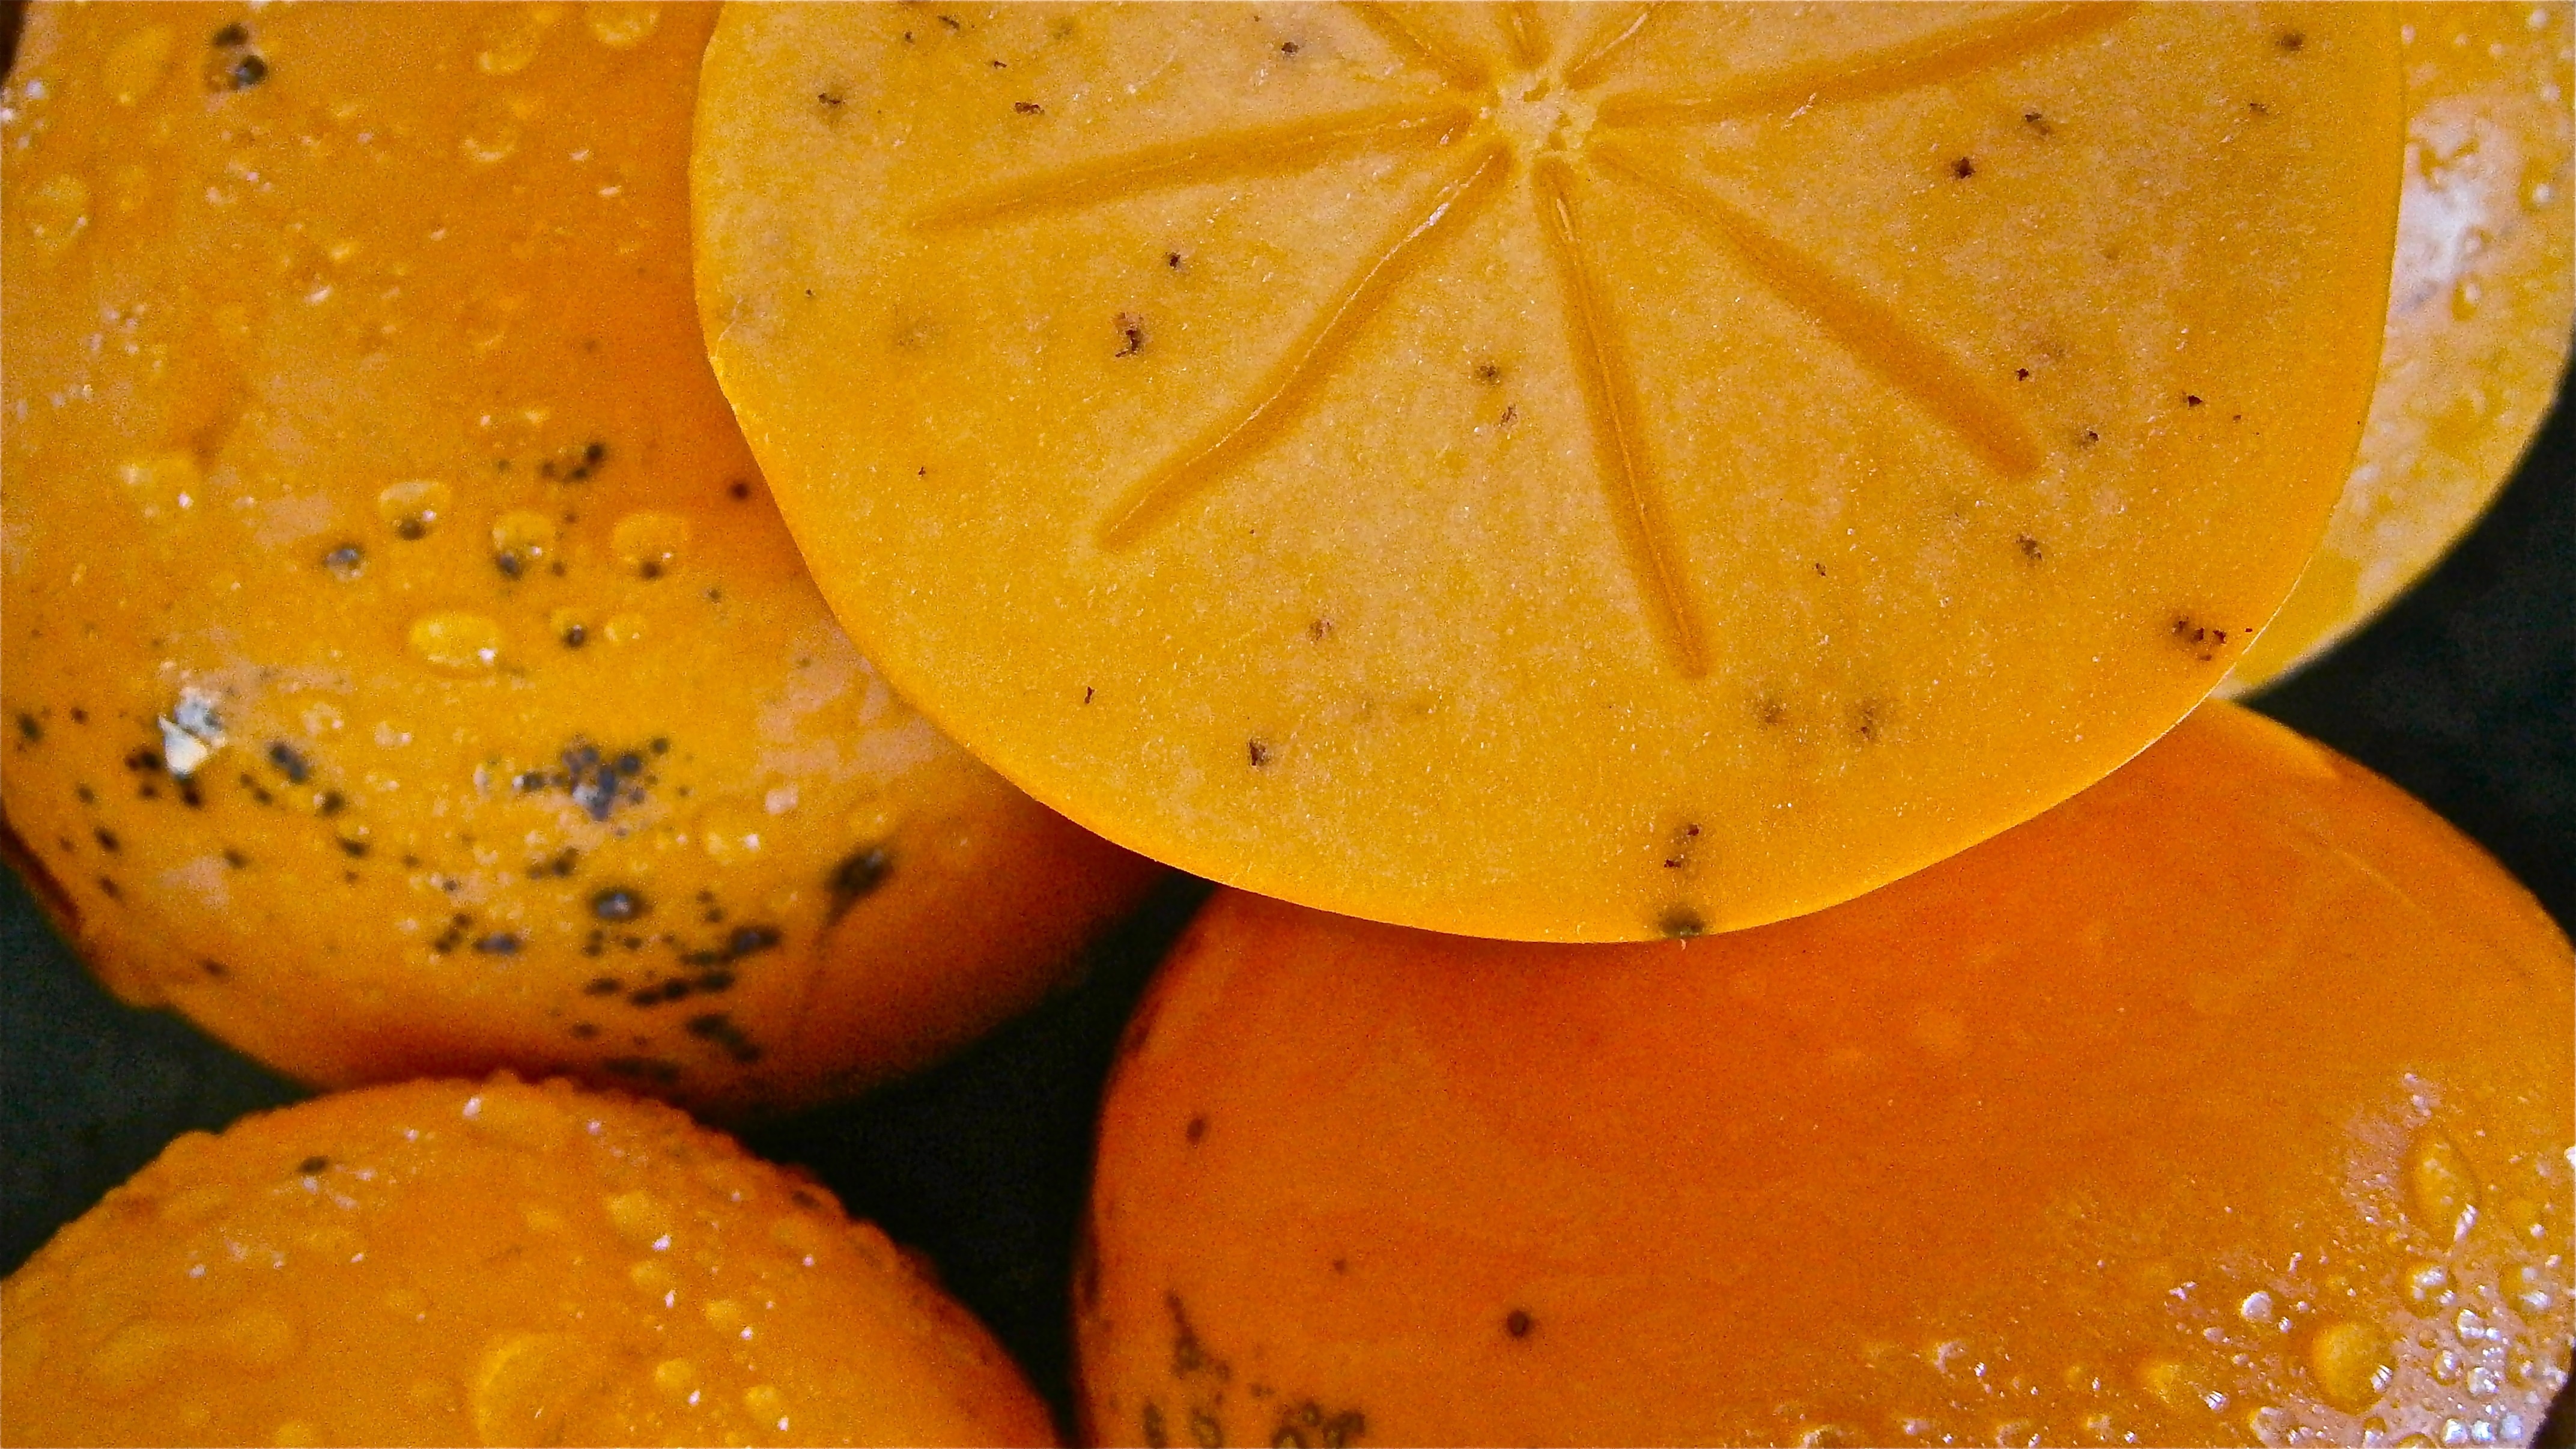 orange melon